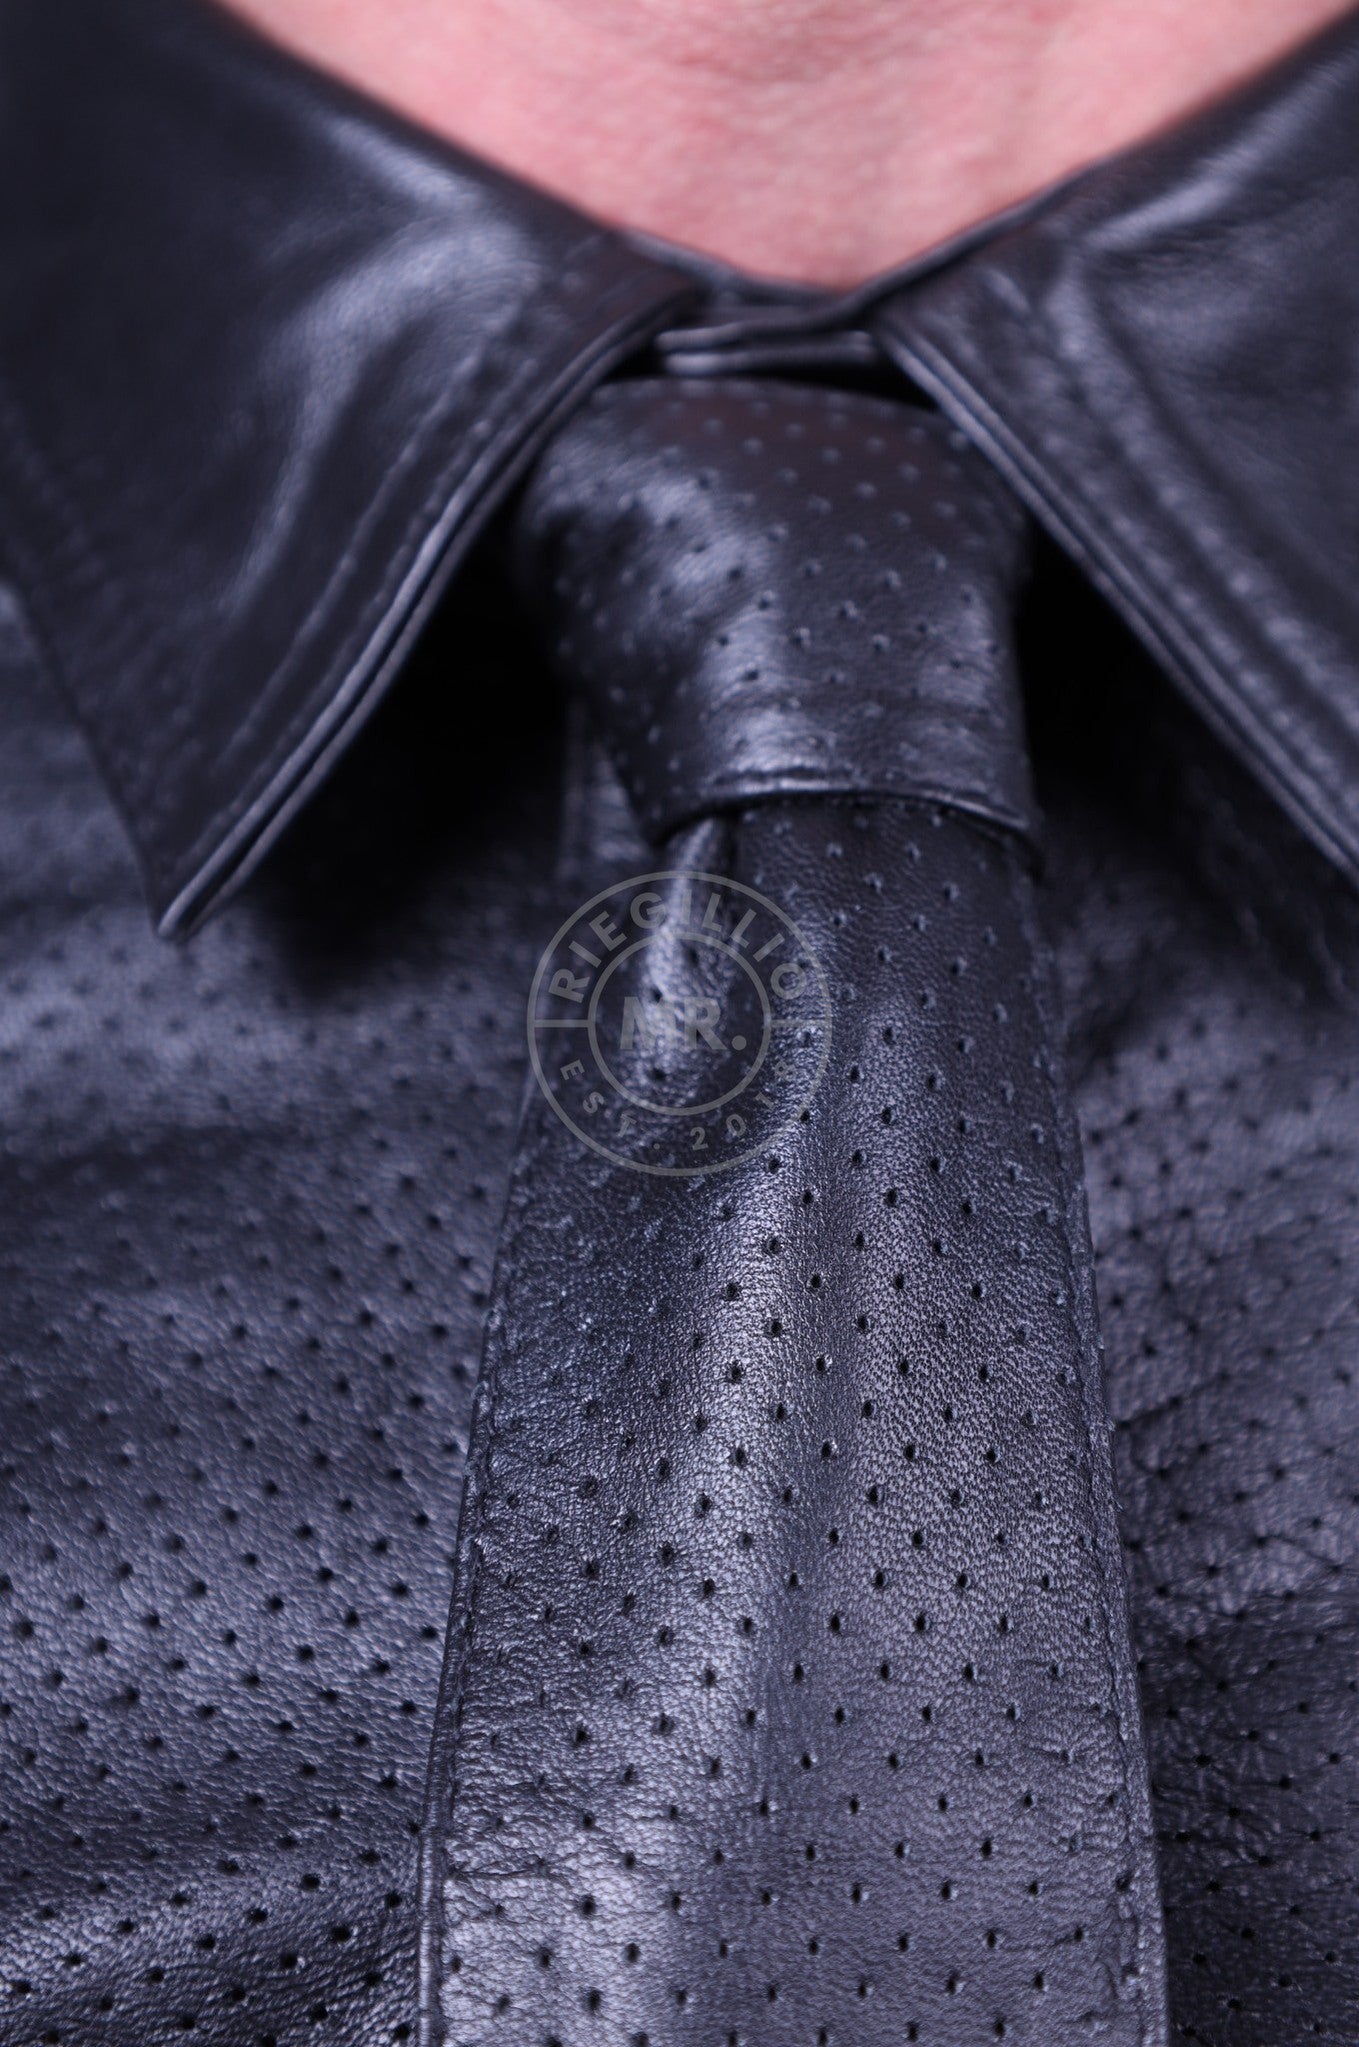 Black Leather Perforated Tie at MR. Riegillio